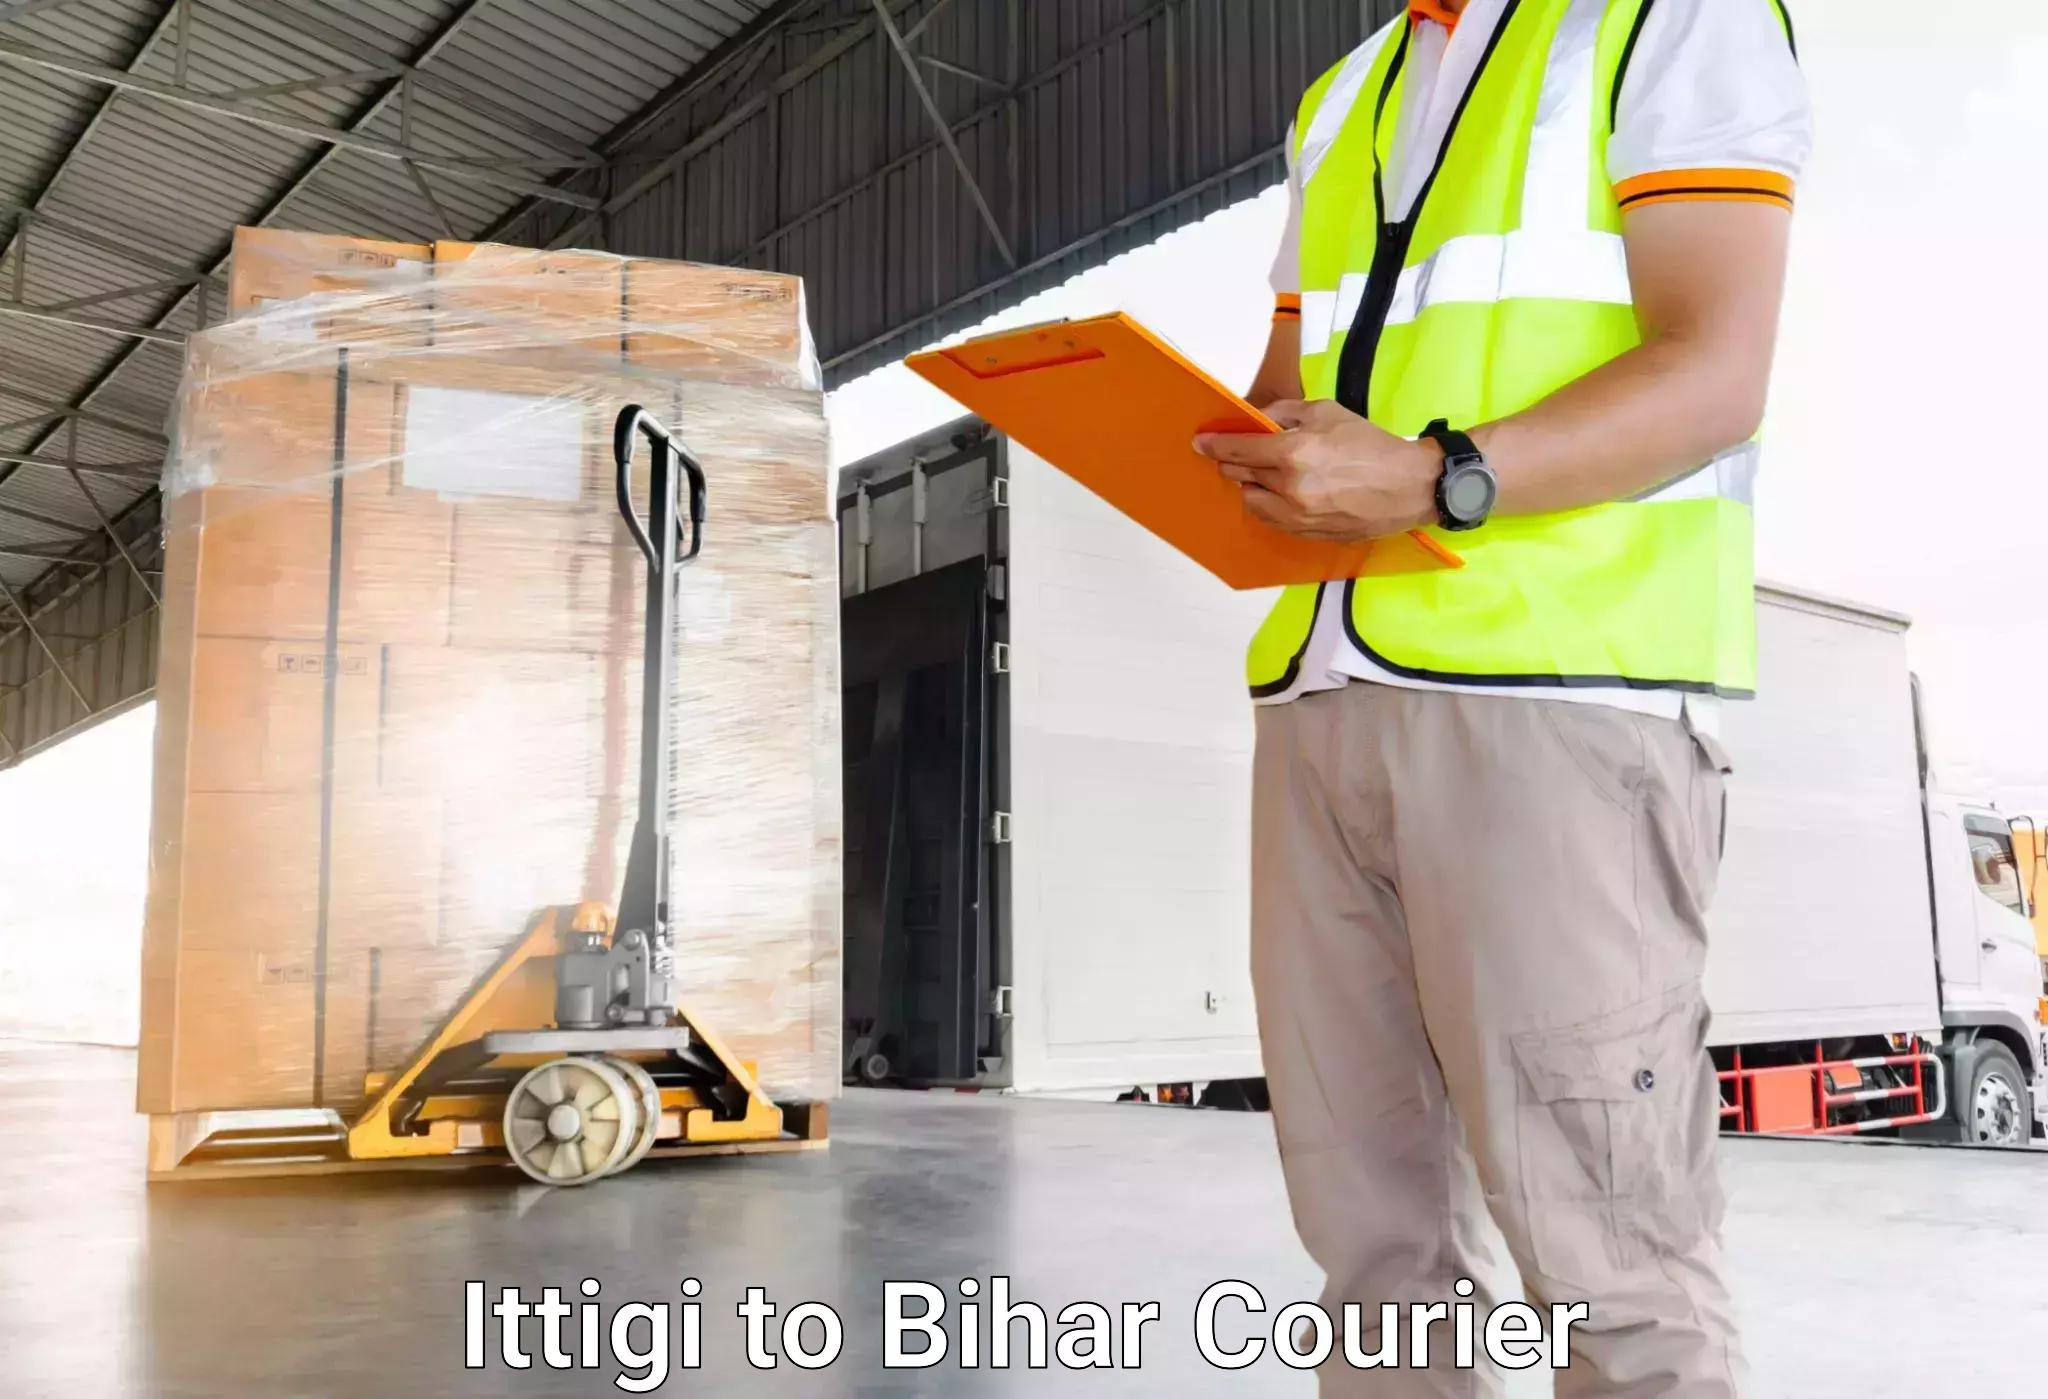 Luggage shipment processing Ittigi to Singhia